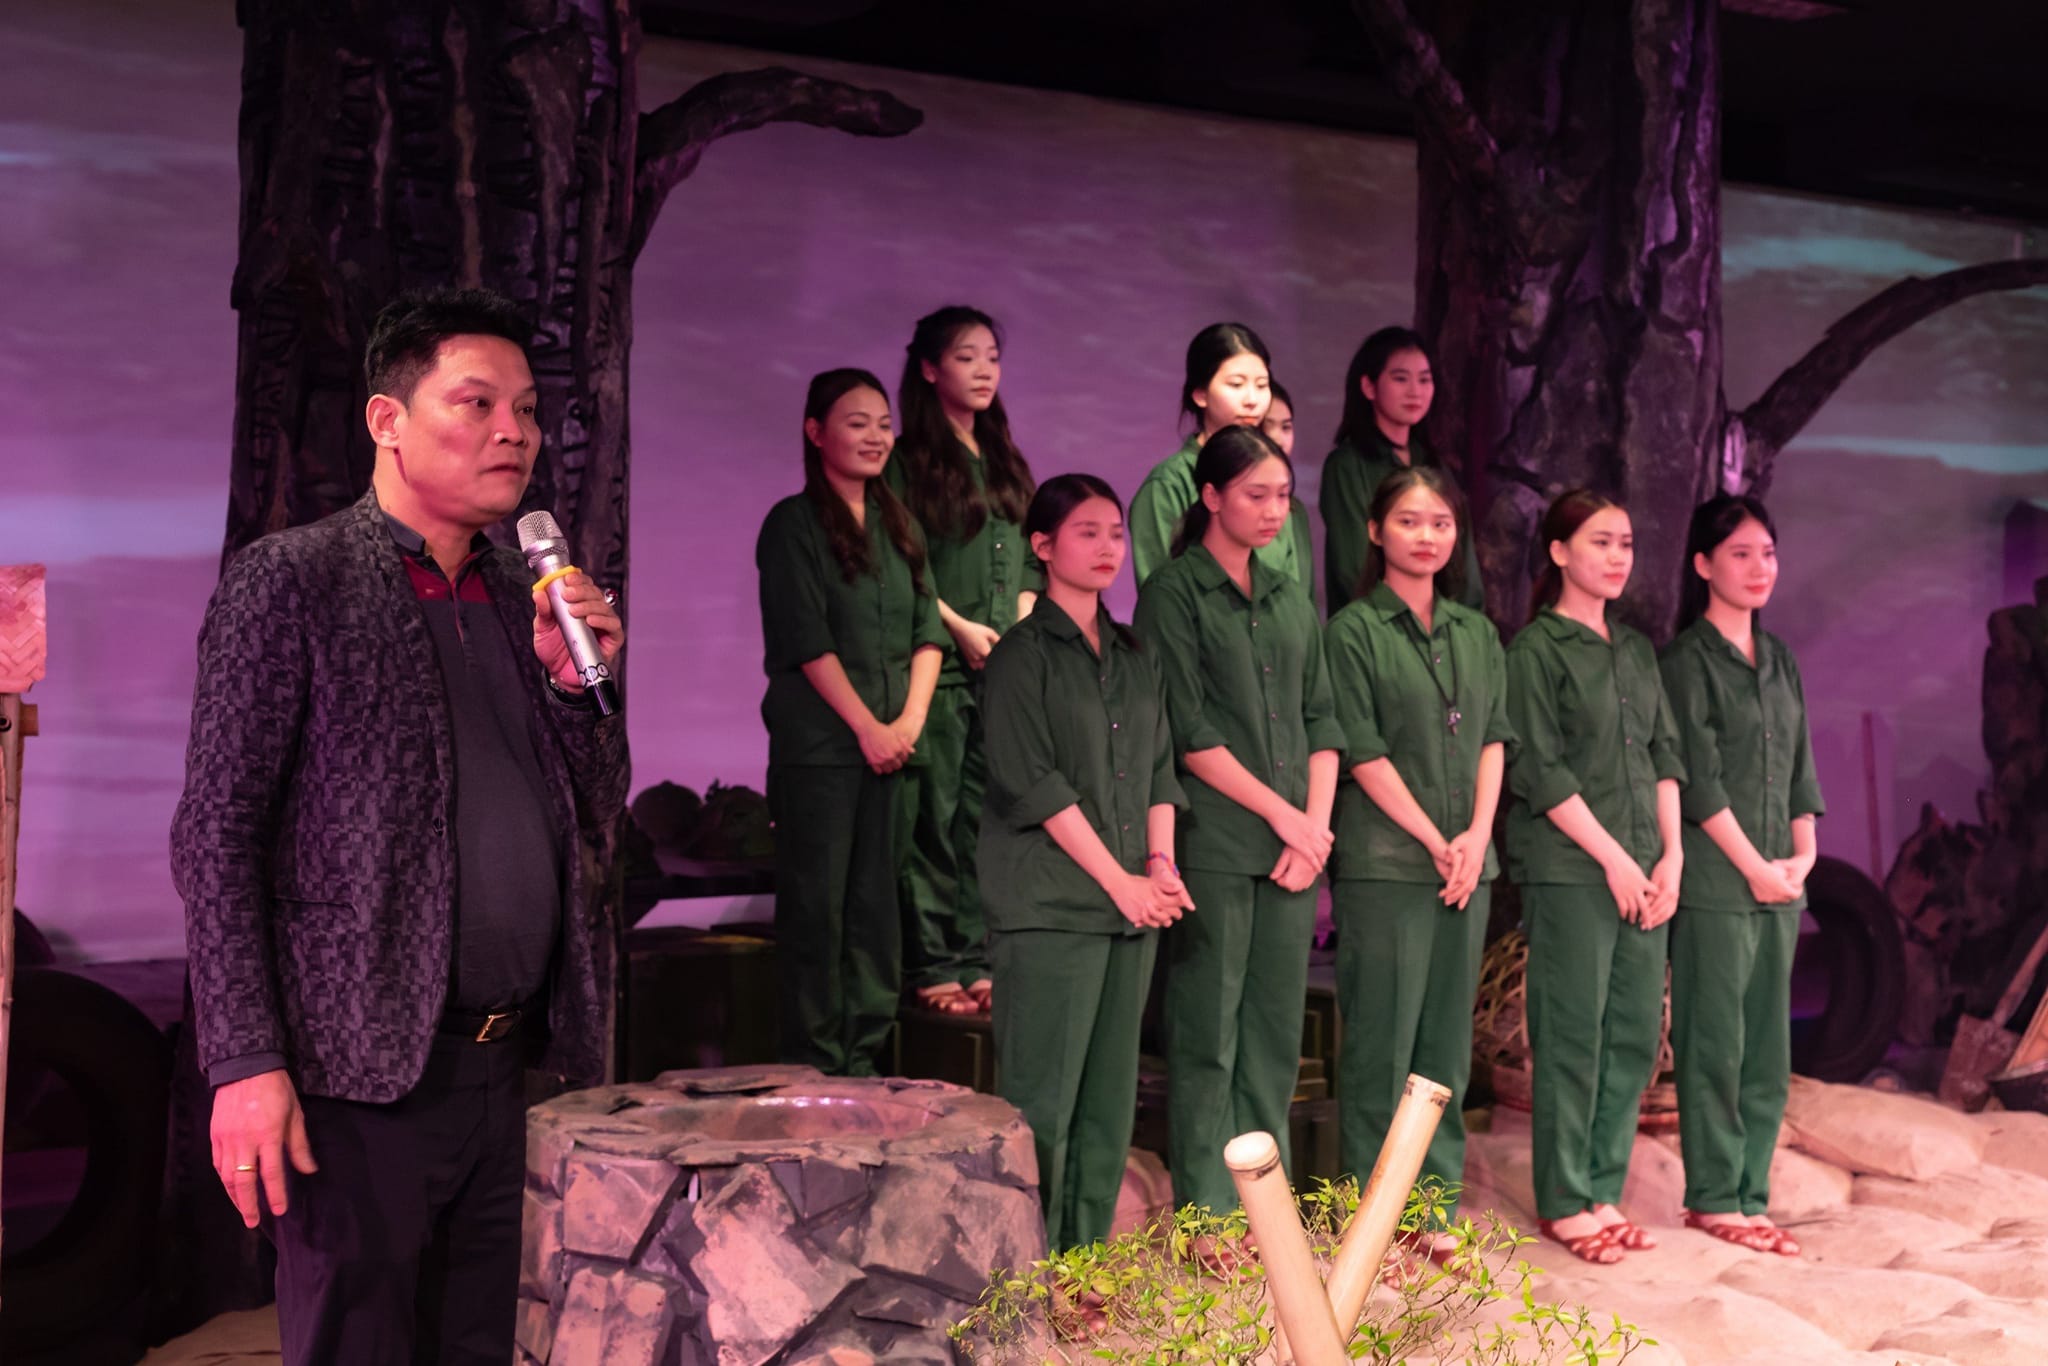  Kỷ niệm ngày 30/4 và 1/5, đến Bảo tàng Phụ nữ Việt Nam xem huyền thoại về 10 cô gãi Ngã ba Đồng Lộc  - Ảnh 1.